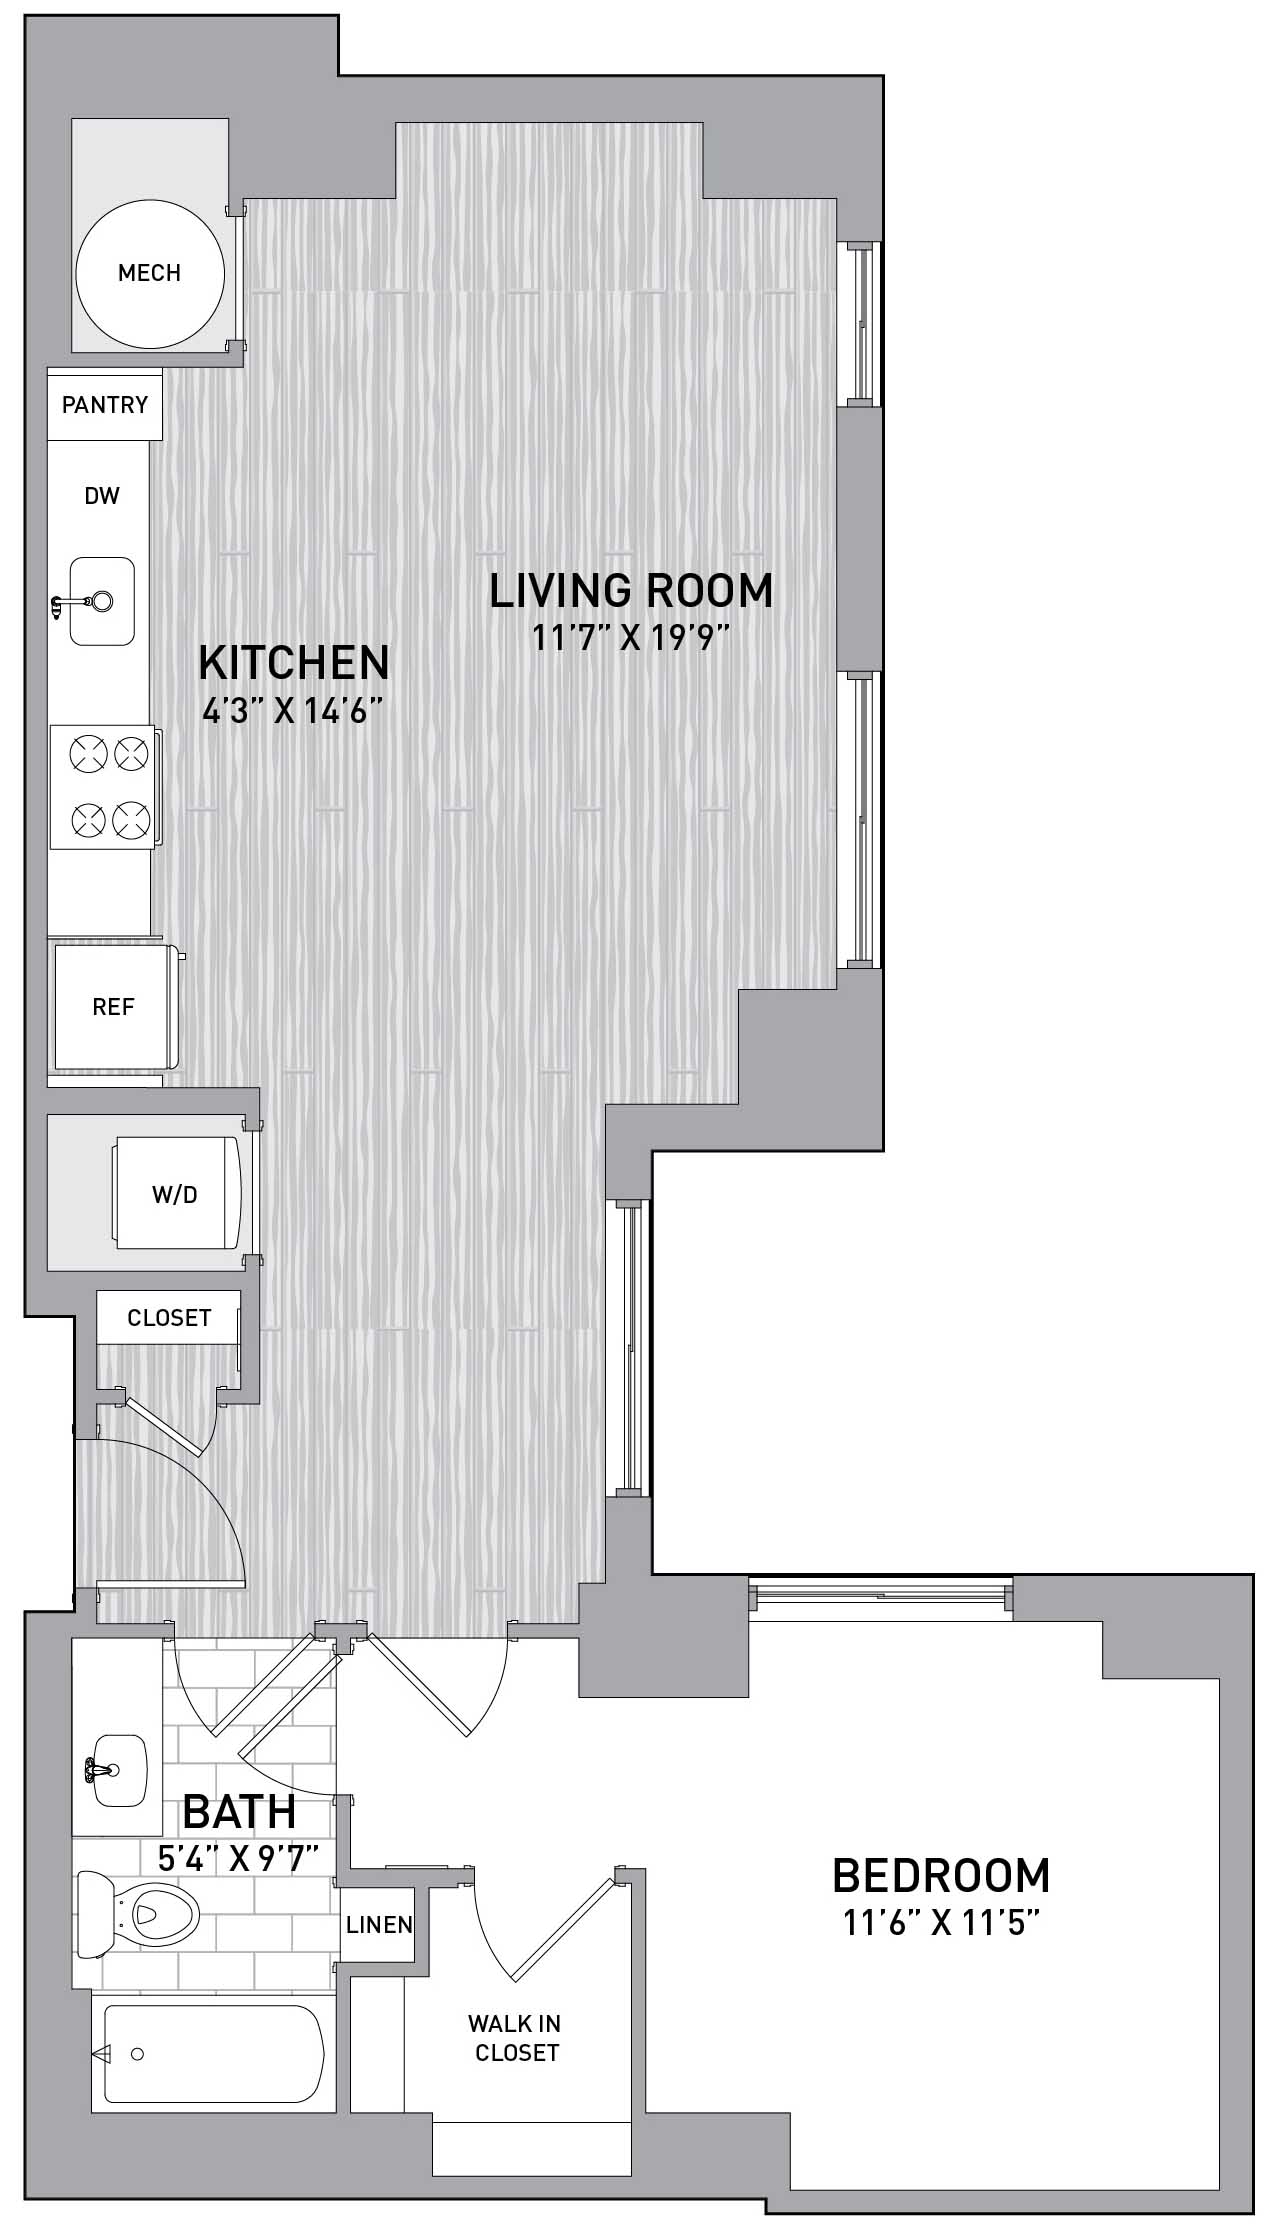 Floorplan Image of unit 151-1101